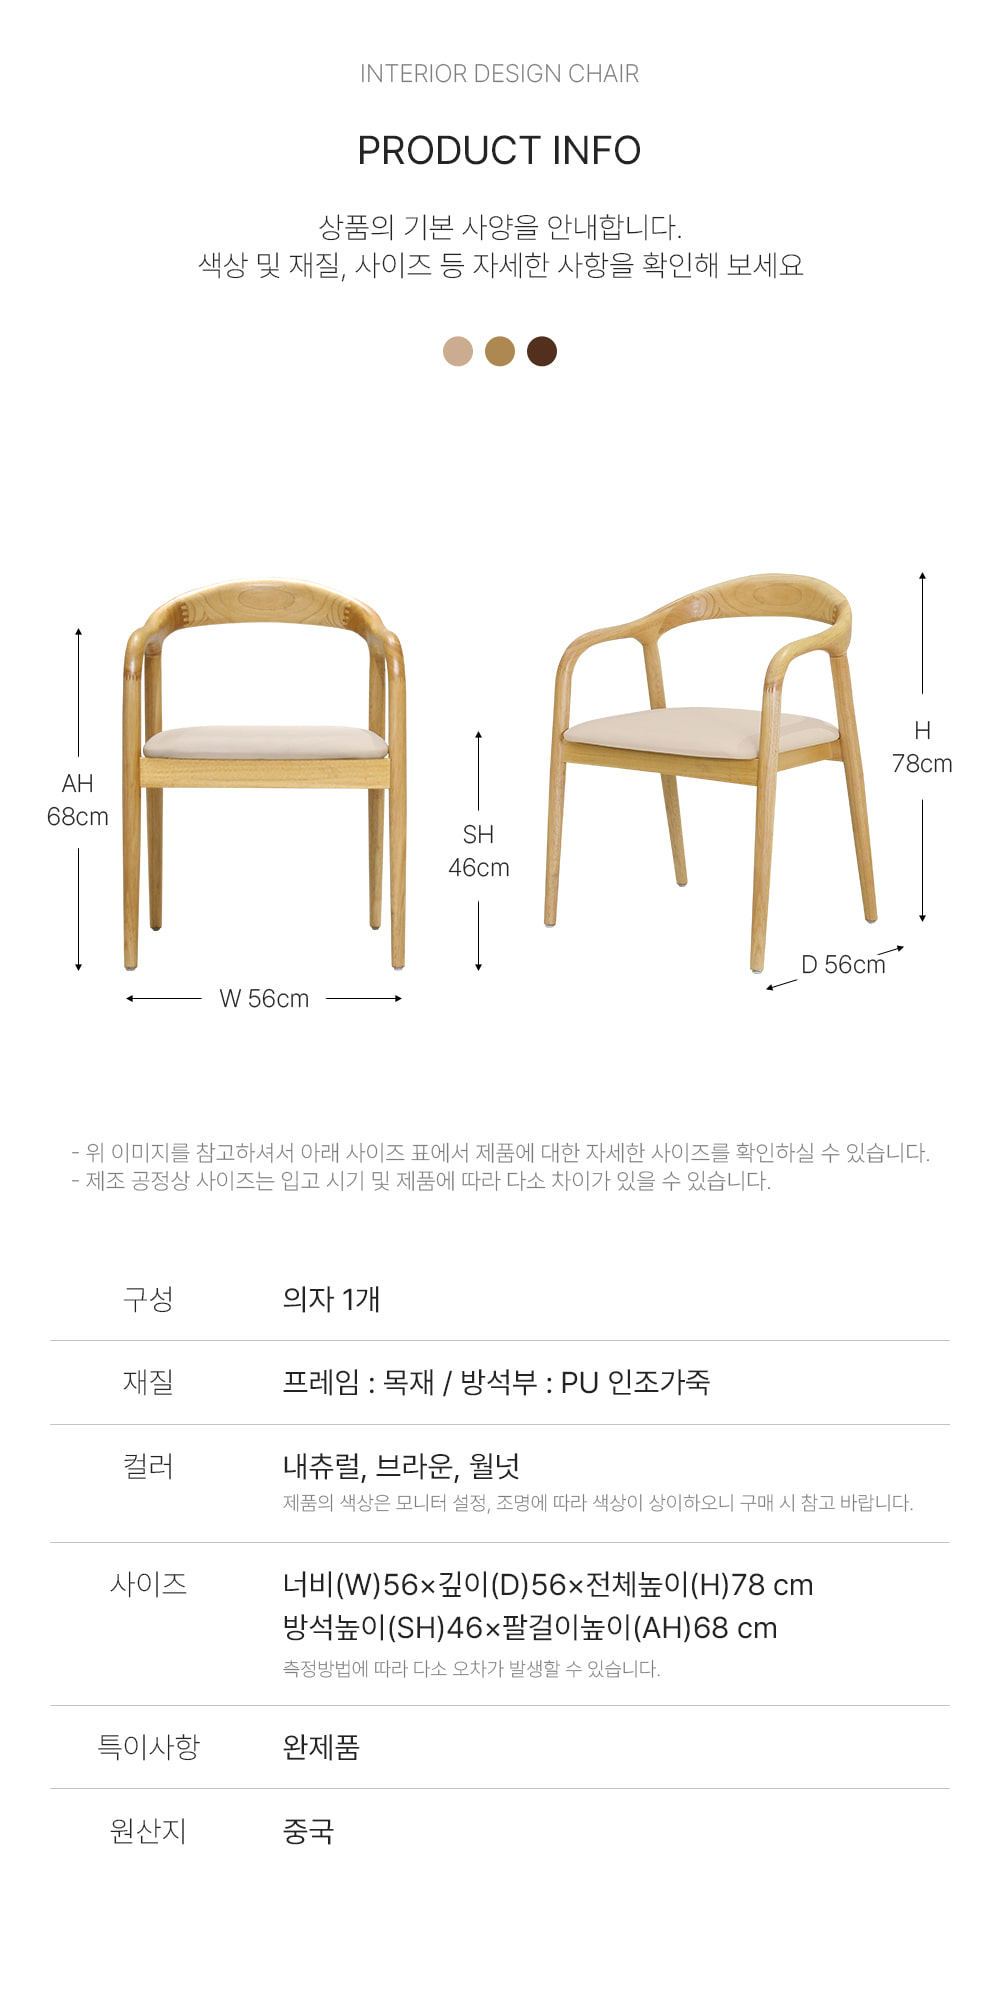 피카소가구【테르체어】/ 키워드 : 목재의자, 디자인의자, 인테리어의자, 가죽의자, 식탁의자 